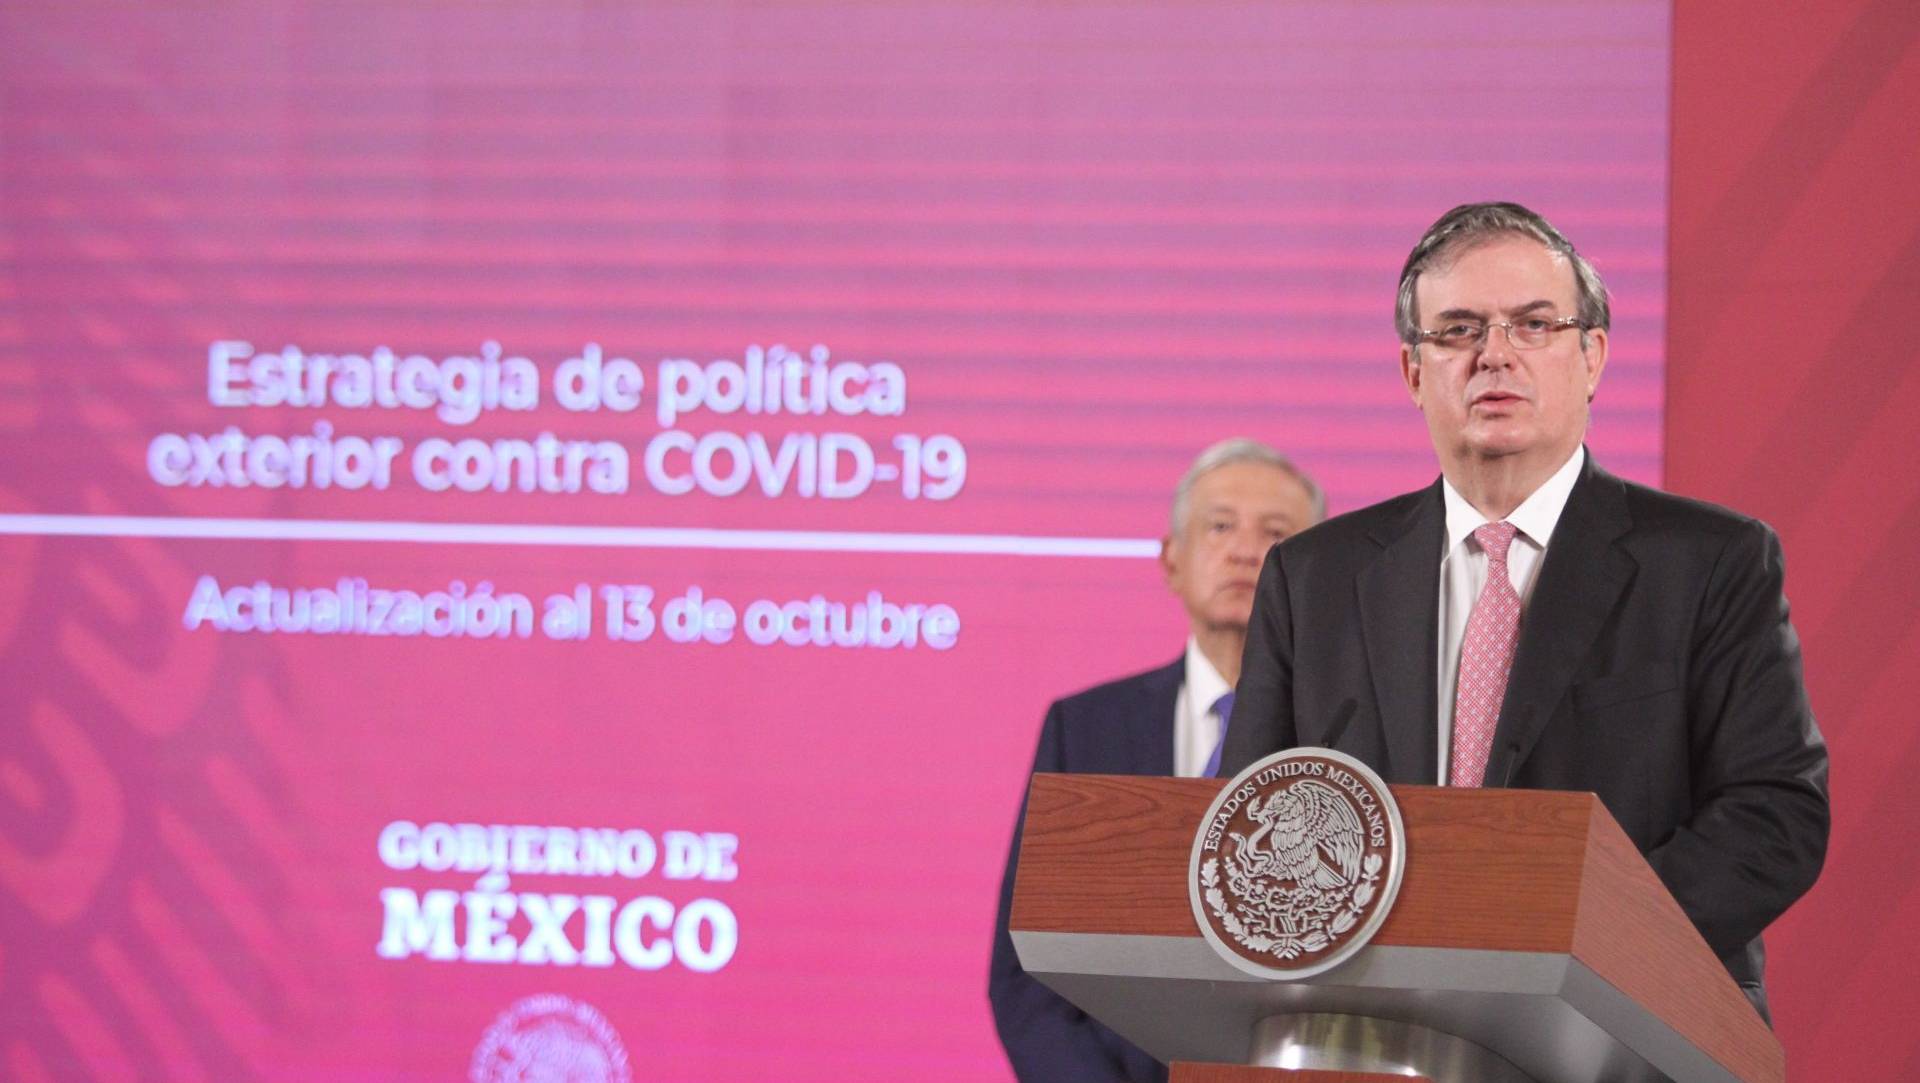 El canciller Marcelo Ebrard adelantó que México pedirá al G20 cooperación internacional para sortear la crisis económica mundial por el COVID-19